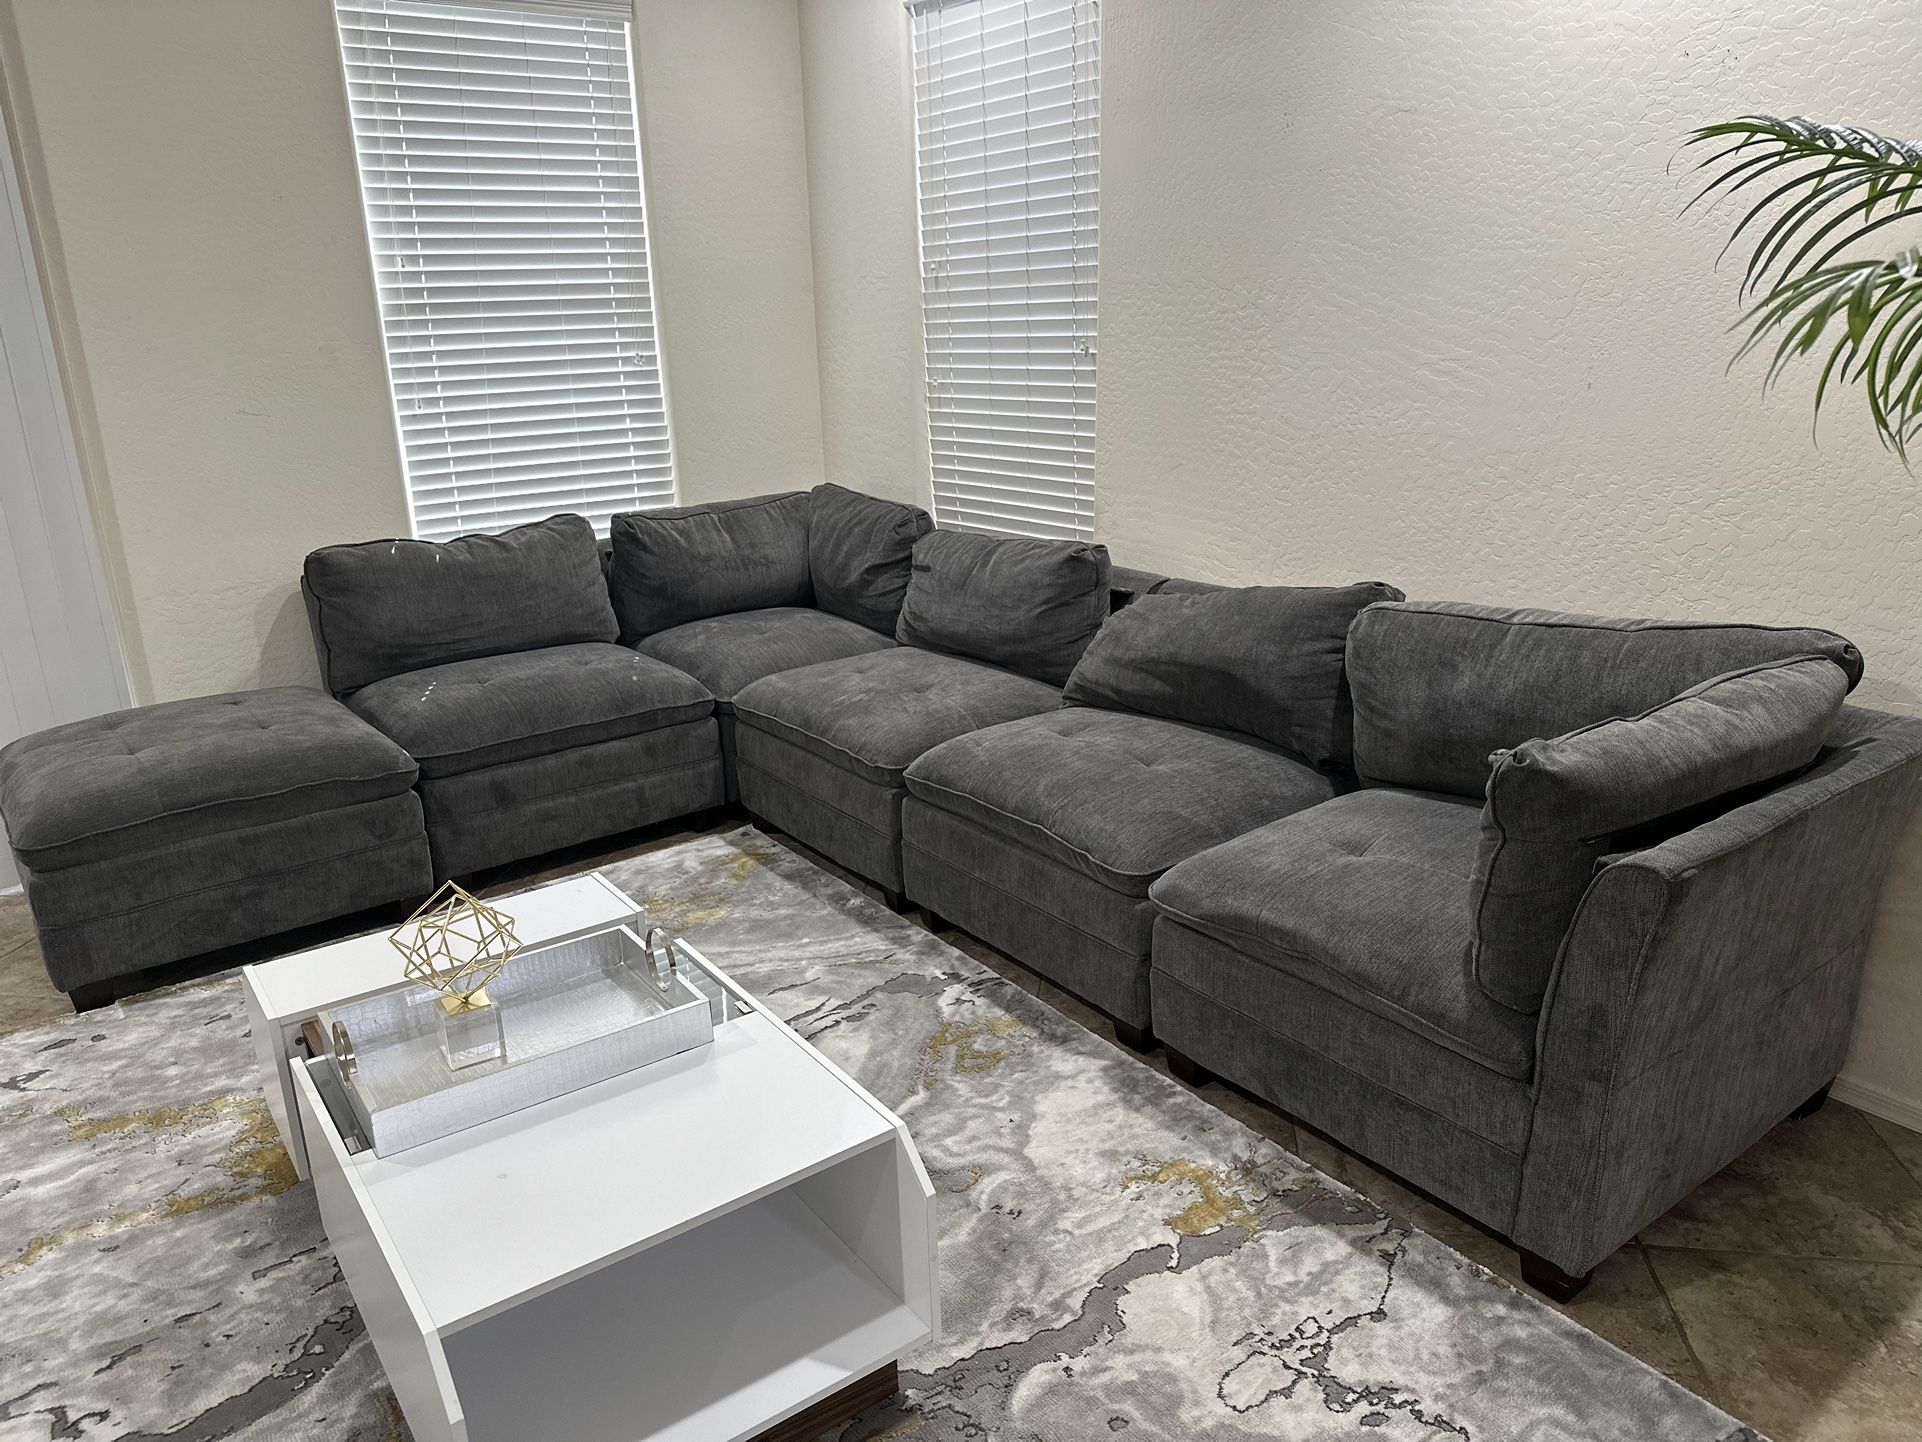 Sofa $500